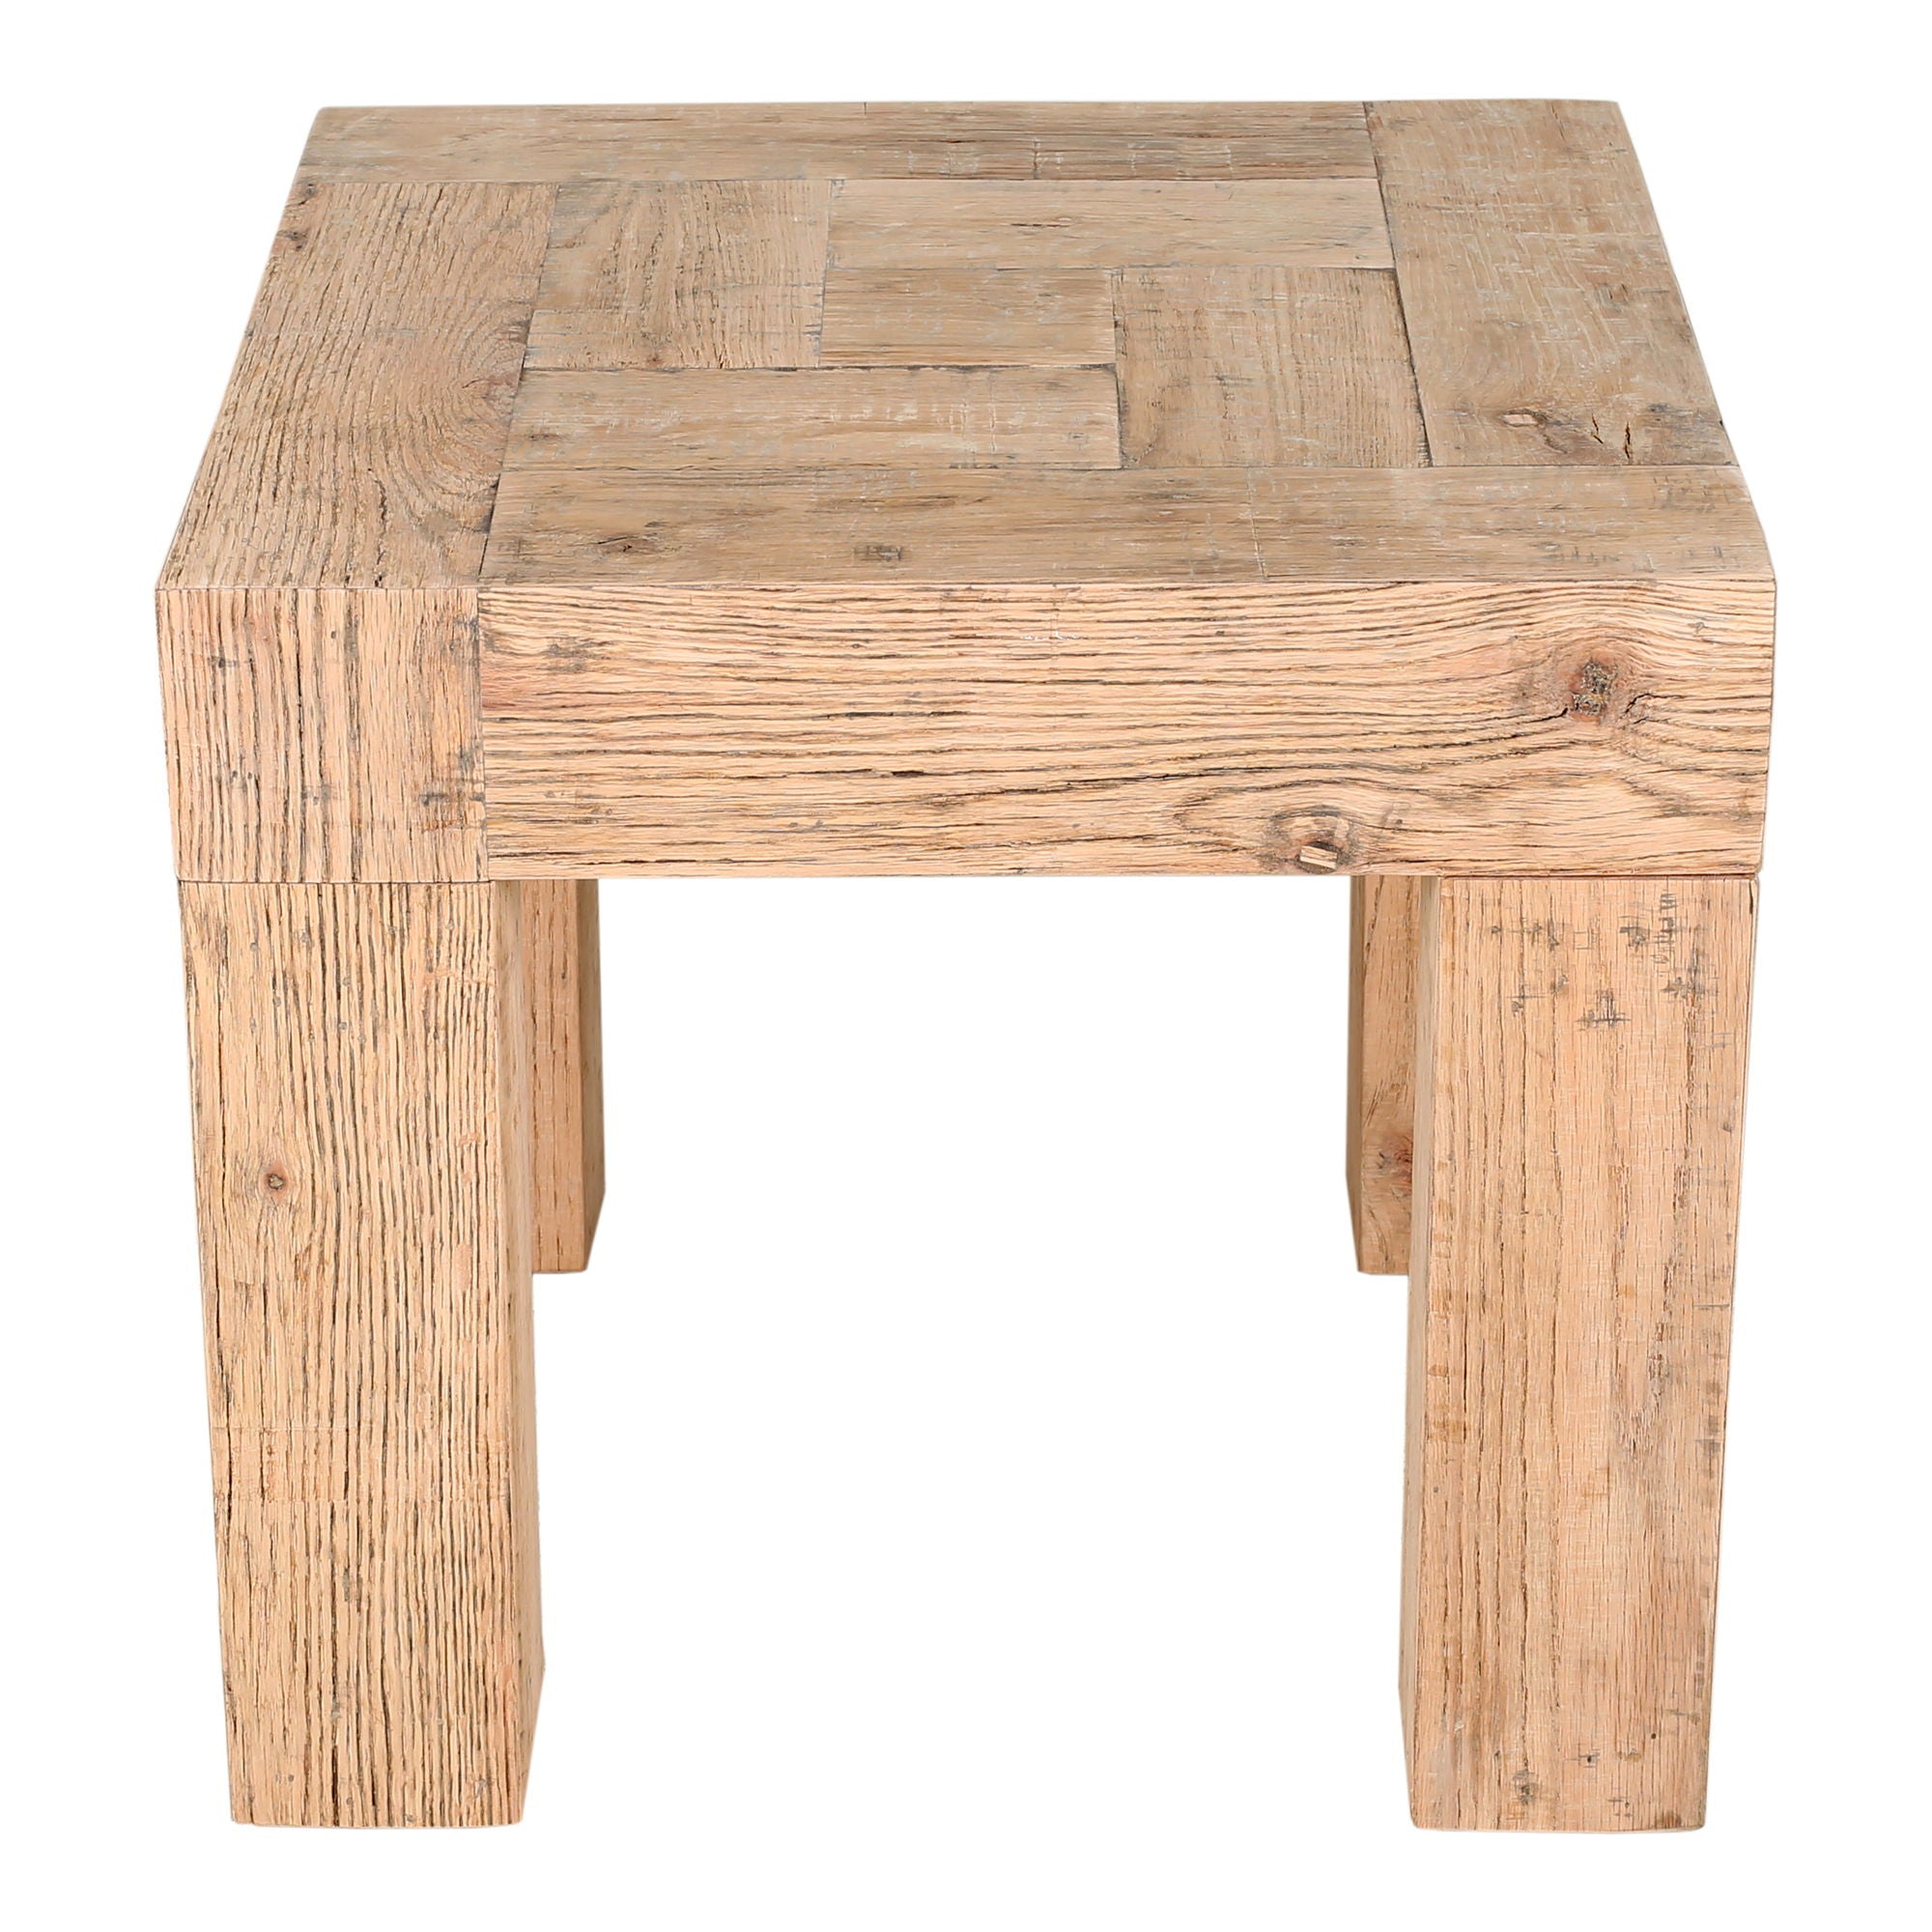 Evander - Side Table Aged Oak - Beige